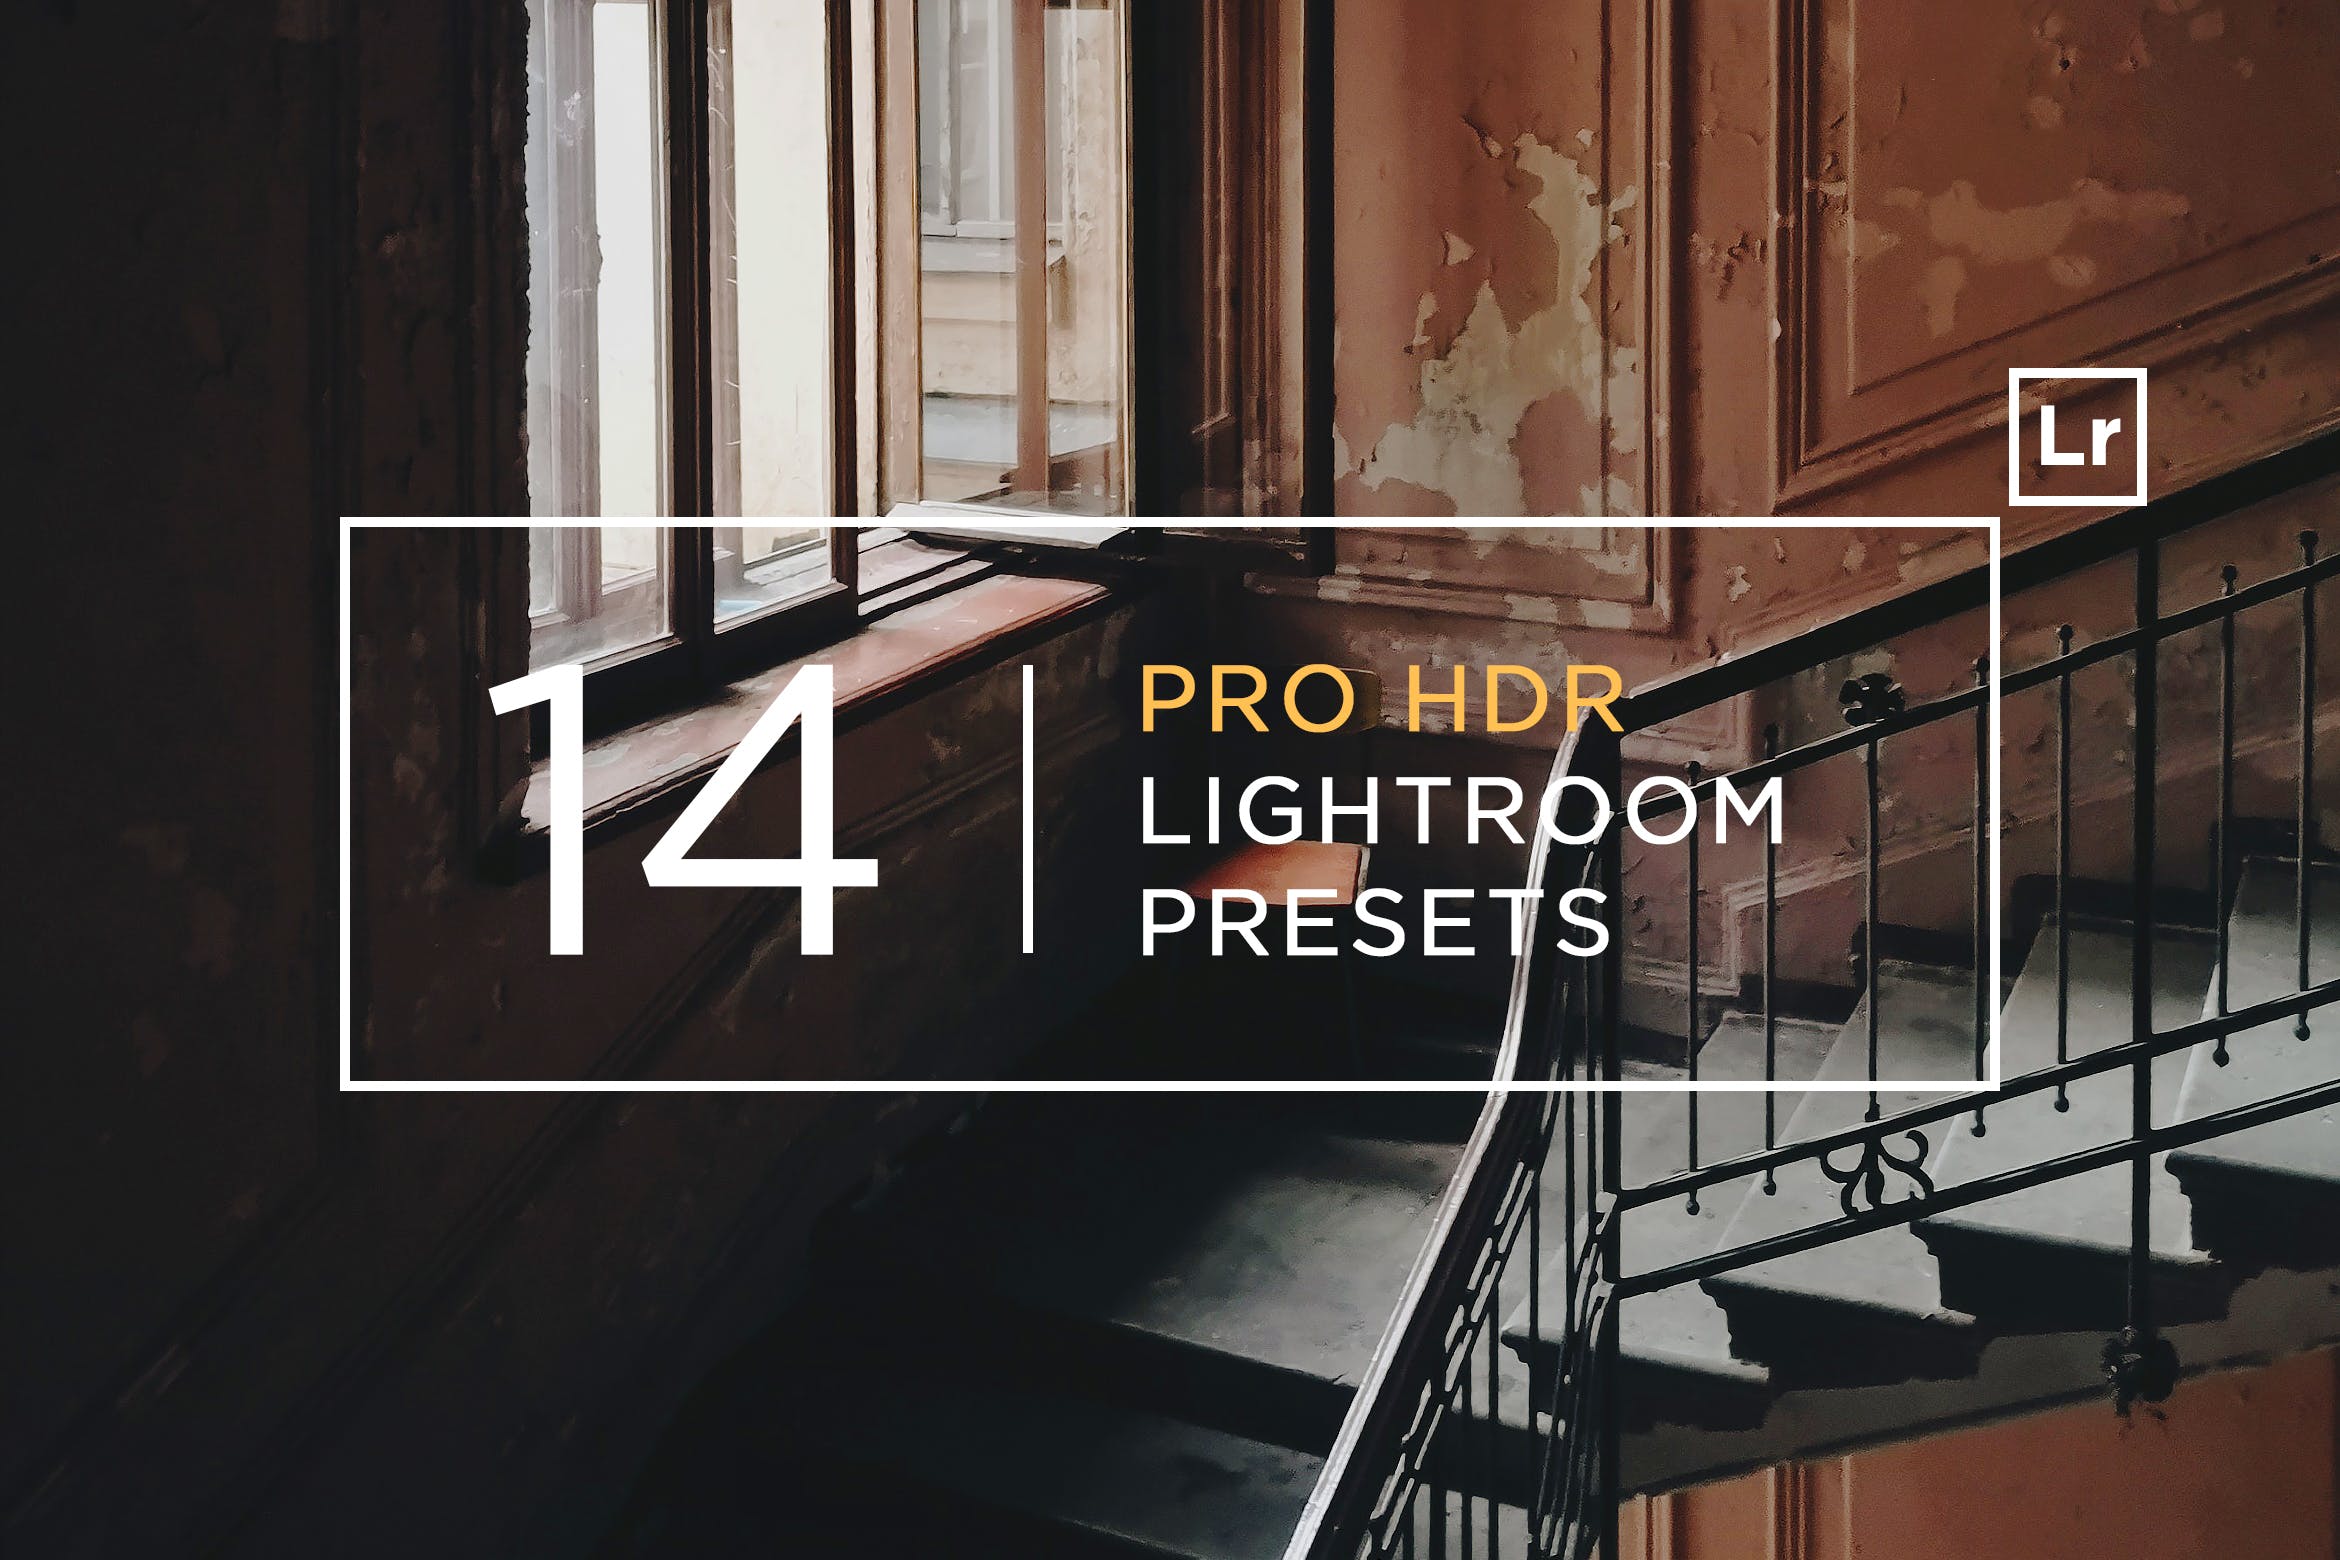 14款专业HDR高动态范围效果Lightroom预设v2 14 Pro HDR Lightroom Presets Part 2插图